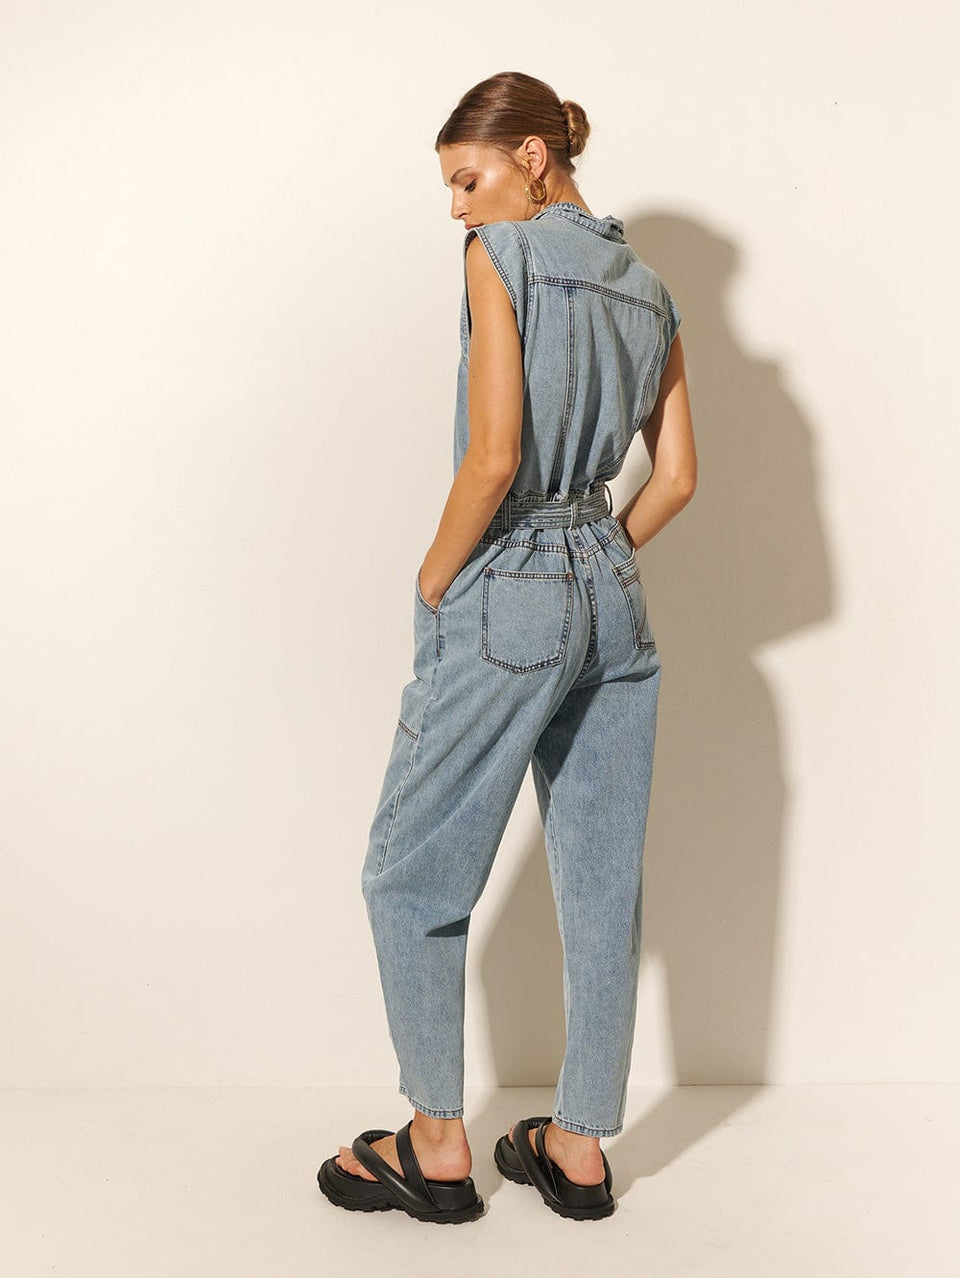 KIVARI Azalia Boilersuit | Model wearing Denim Boilersuit Back View